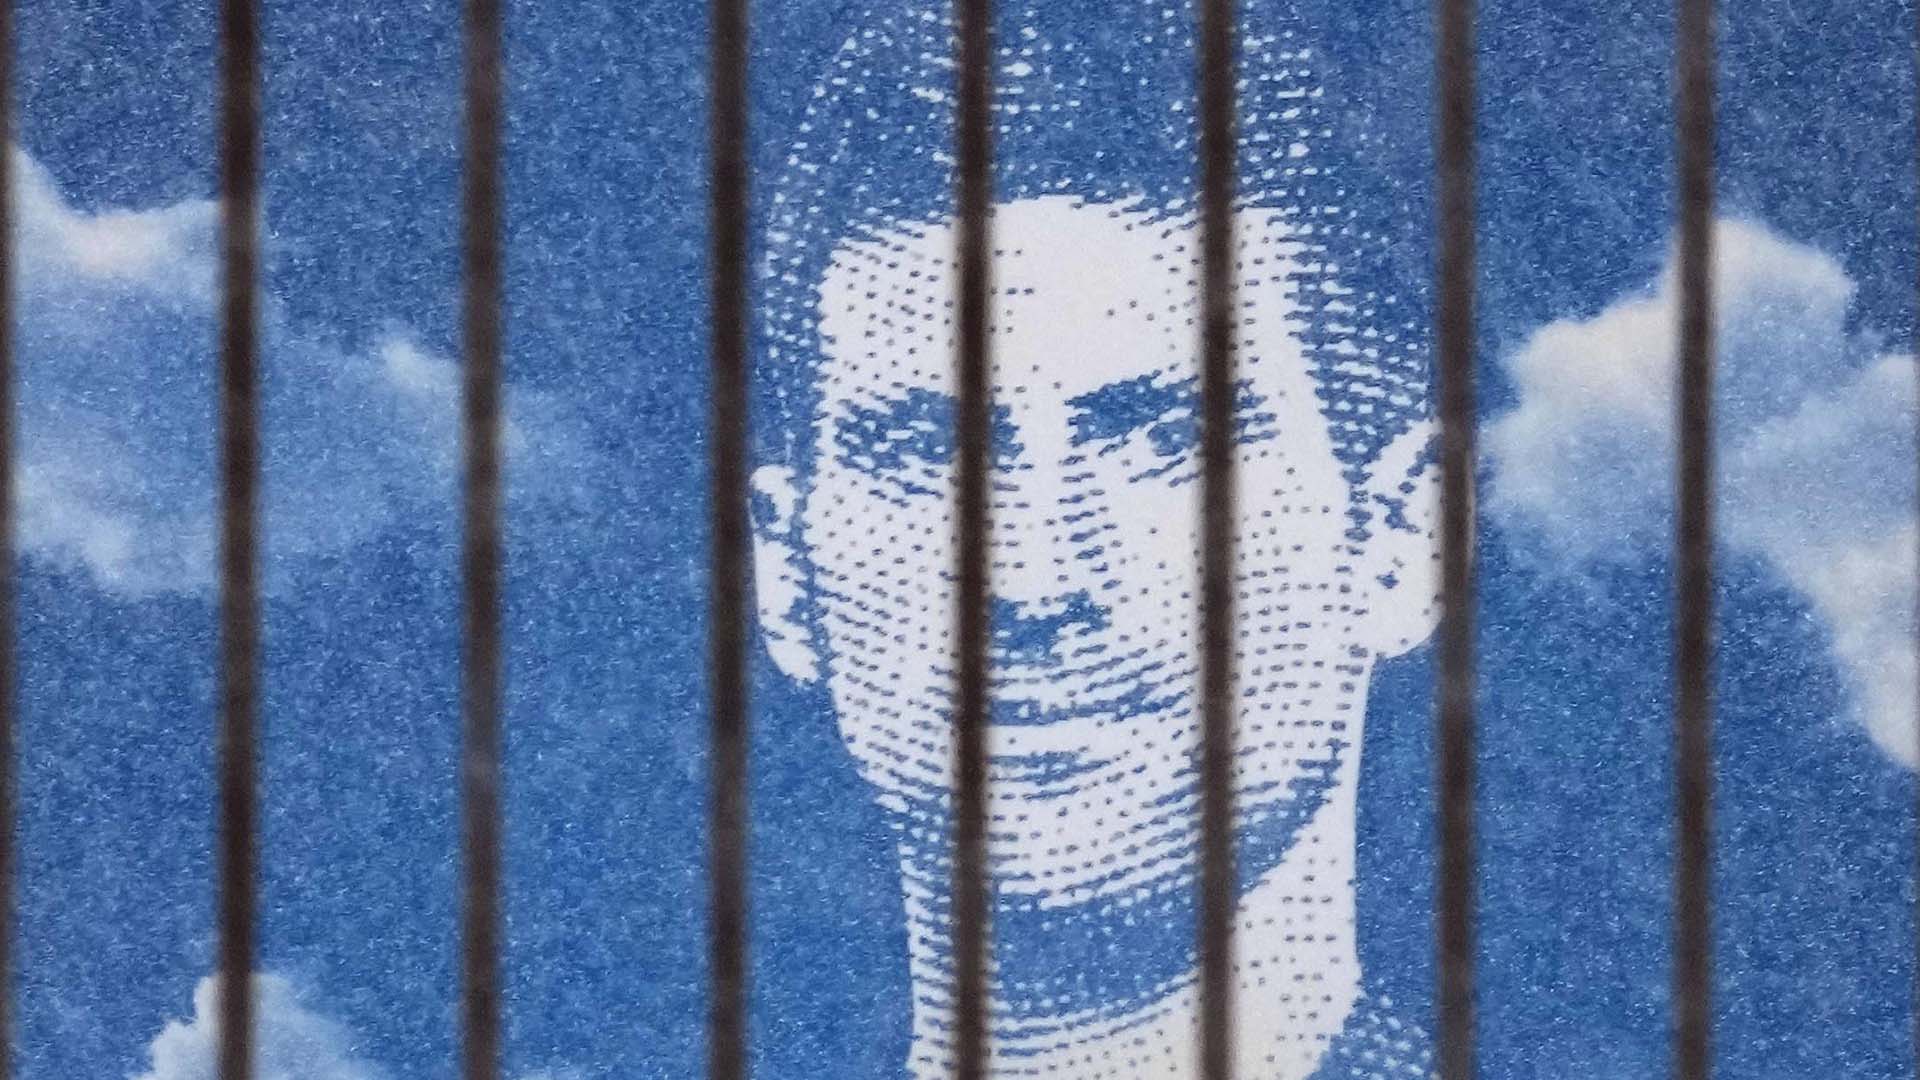 Un panneau d'affichage représentant le joueur de tennis serbe Novak Djokovic sur un bâtiment à Belgrade, en Serbie, le lundi 10 janvier 2022. La star du tennis Novak Djokovic a remporté lundi une bataille judiciaire pour rester en Australie afin de disputer l'Open d'Australie bien qu'elle n'ait pas été vaccinée contre le COVID-19 , mais le gouvernement a menacé d'annuler son visa une seconde fois. Le juge de la Cour de circuit fédérale Anthony Kelly a rétabli le visa de Djokovic, qui a été annulé après son arrivée la semaine dernière parce que les autorités ont décidé qu'il ne remplissait pas les critères d'exemption d'une exigence d'entrée selon laquelle tous les non-citoyens devaient être complètement vaccinés. (Photo AP/Darko Vojinovic)